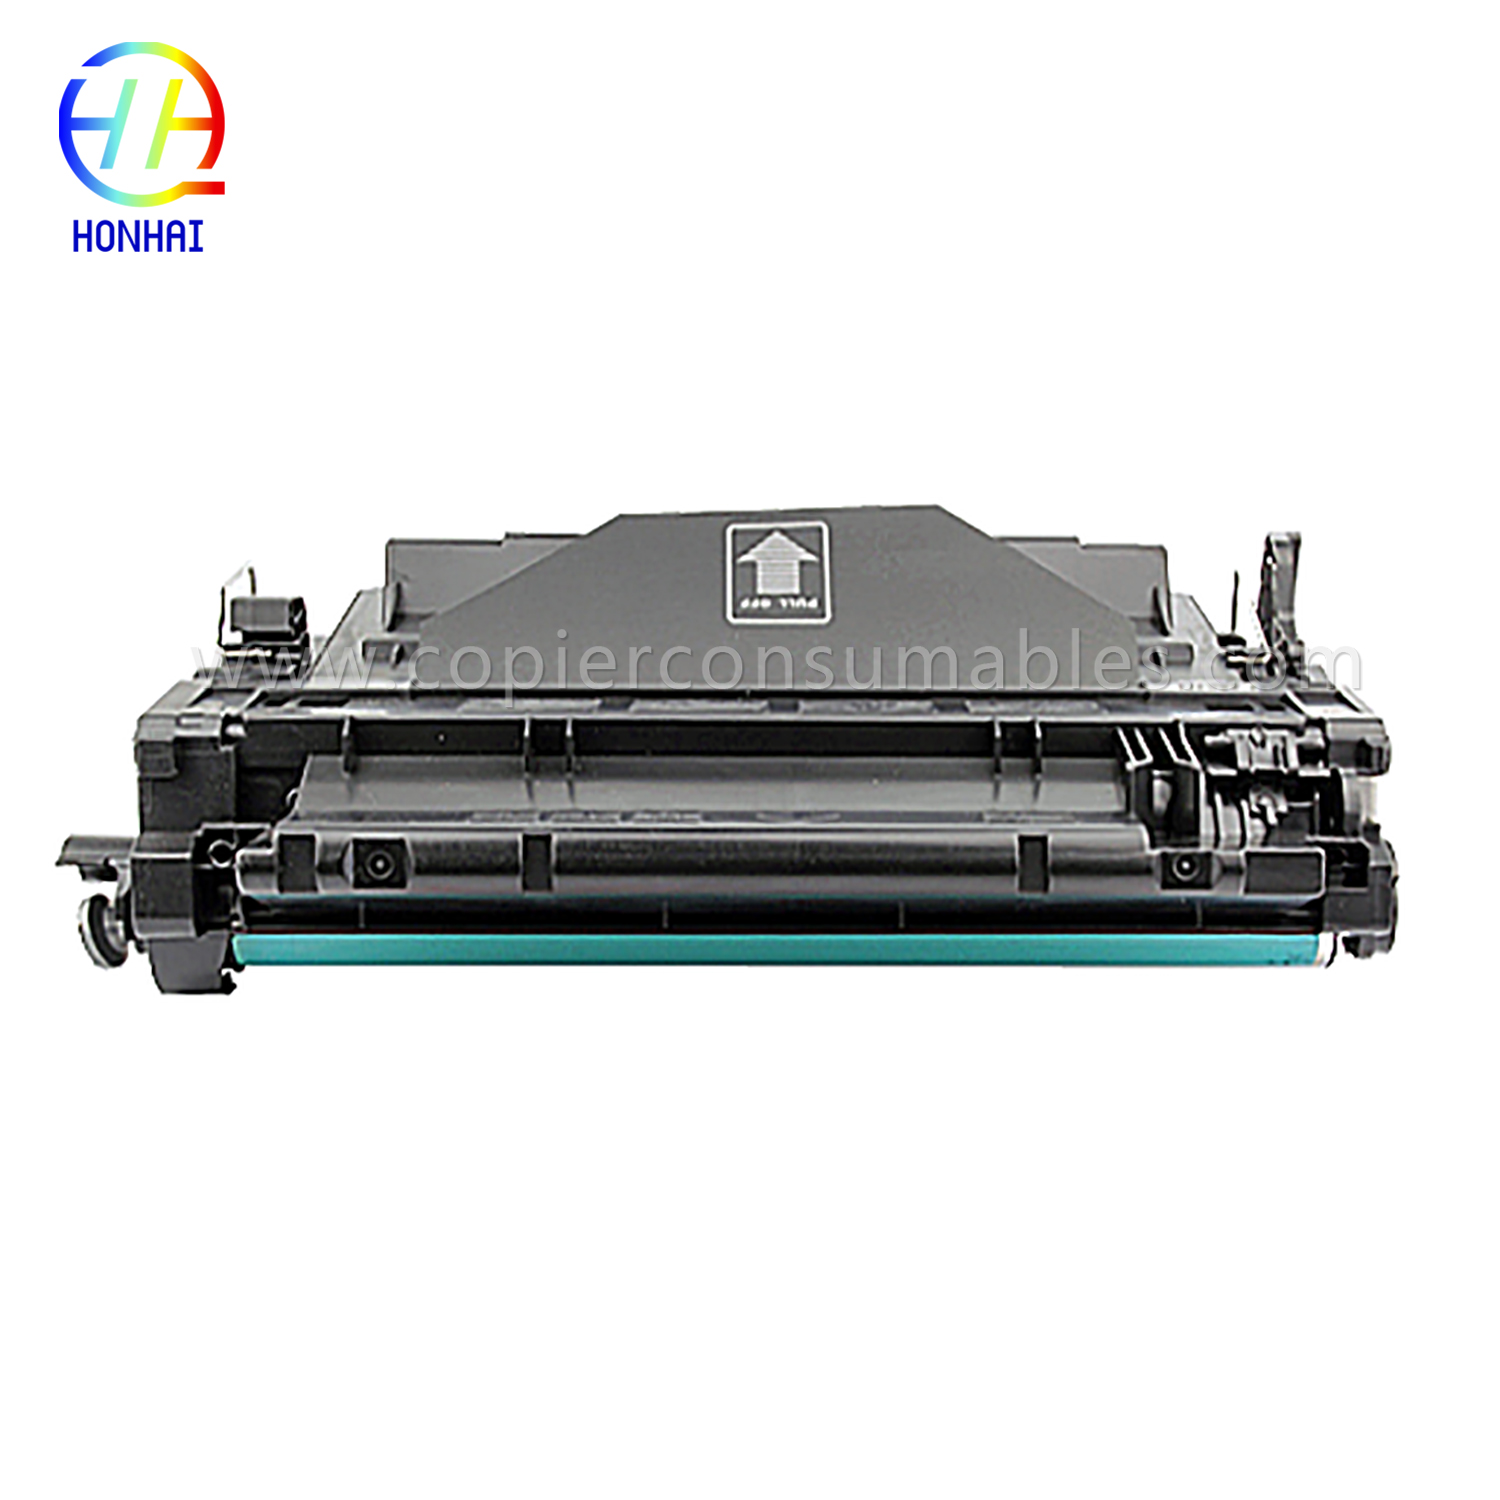 Color Toner Cartridges pro HP LaserJet Pro MFP M521dn Enterprise P3015 CE255X